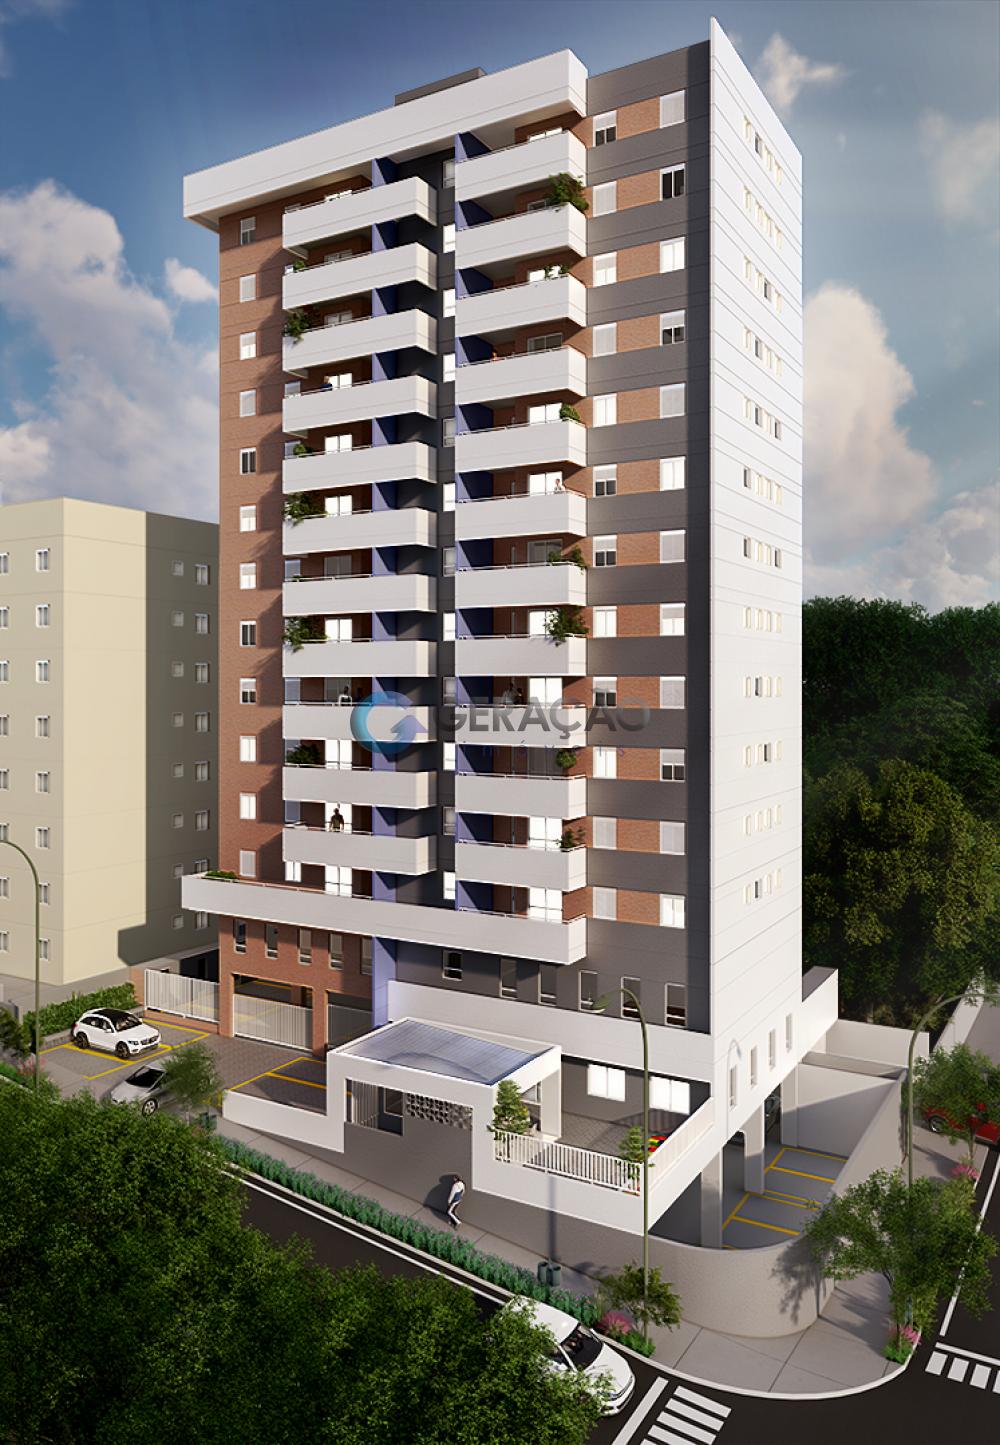 Comprar Apartamento / Padrão em São José dos Campos R$ 302.000,00 - Foto 1